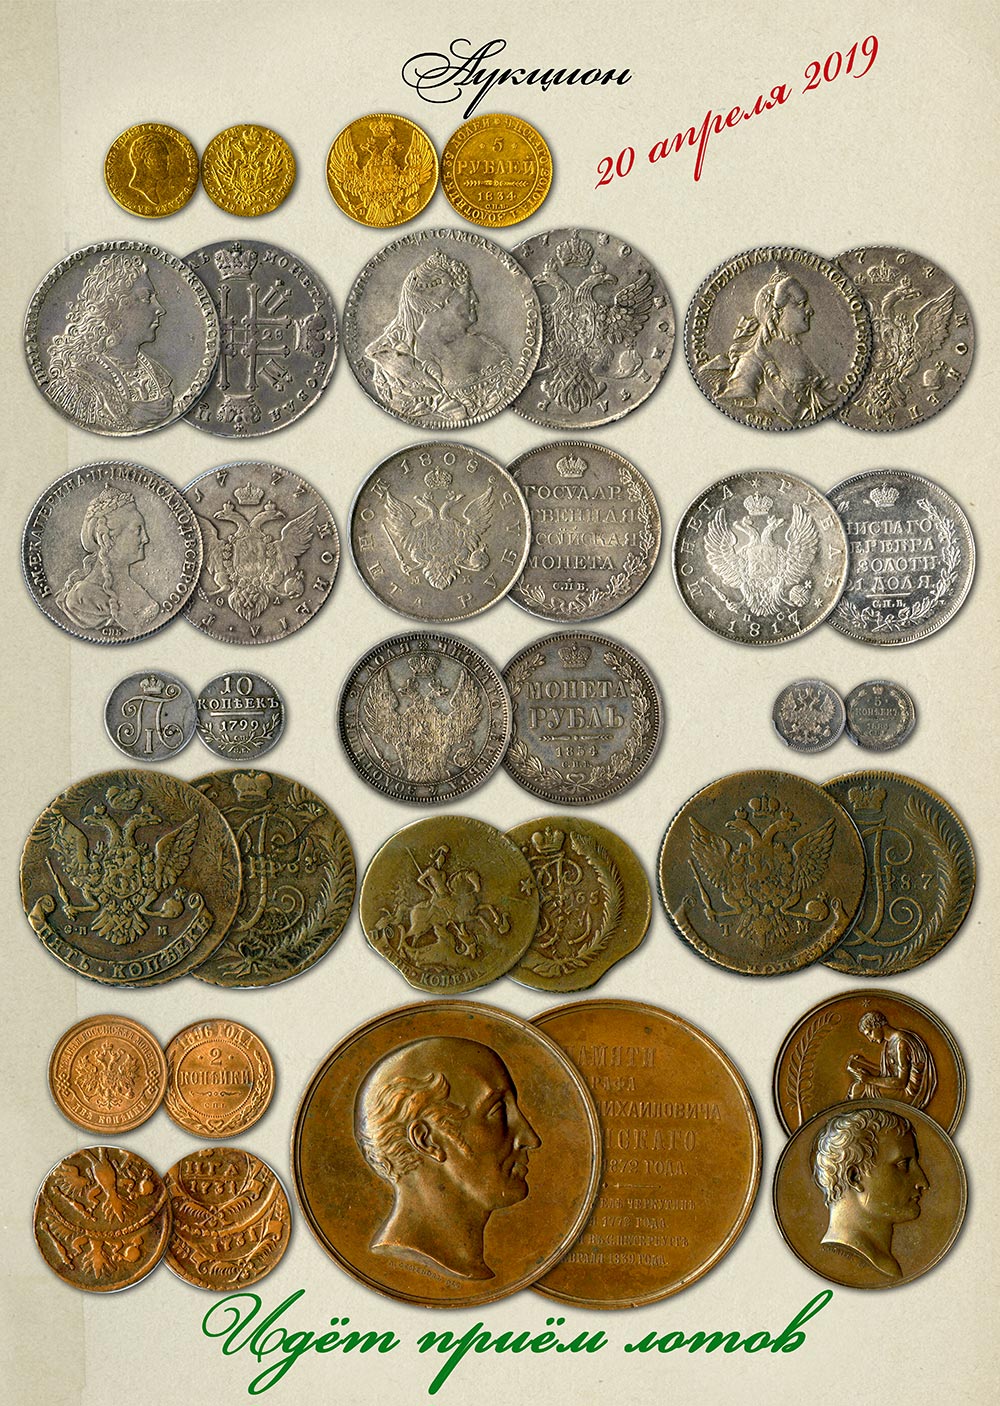 Аукционы монет в россии. Конрос аукцион монет. Редкие монеты. Аукцион старинных монет. Редкие старинные монеты.